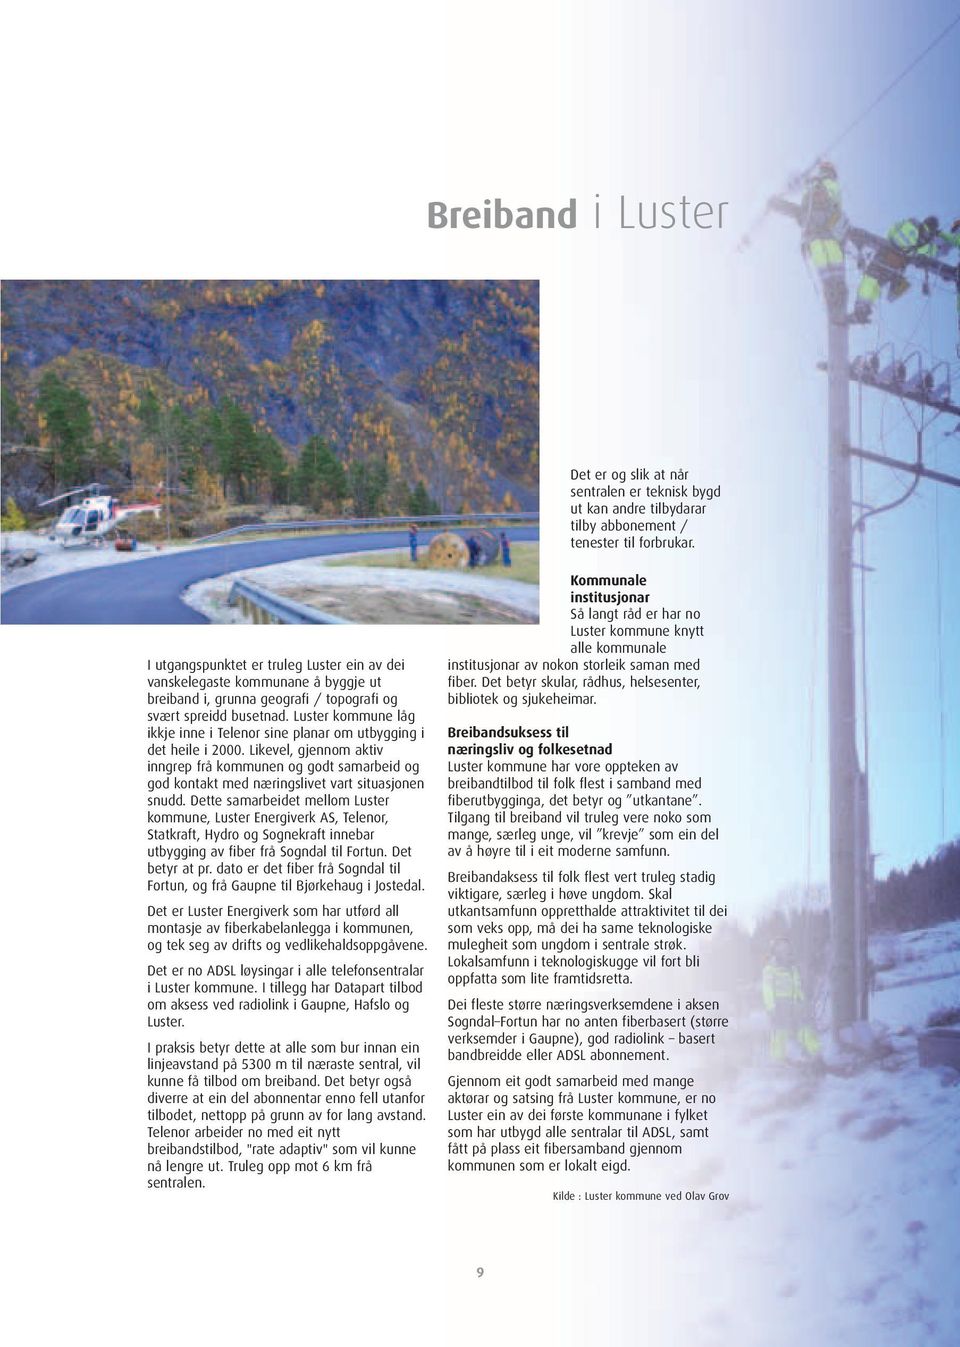 Luster kommune låg ikkje inne i Telenor sine planar om utbygging i det heile i 2000.